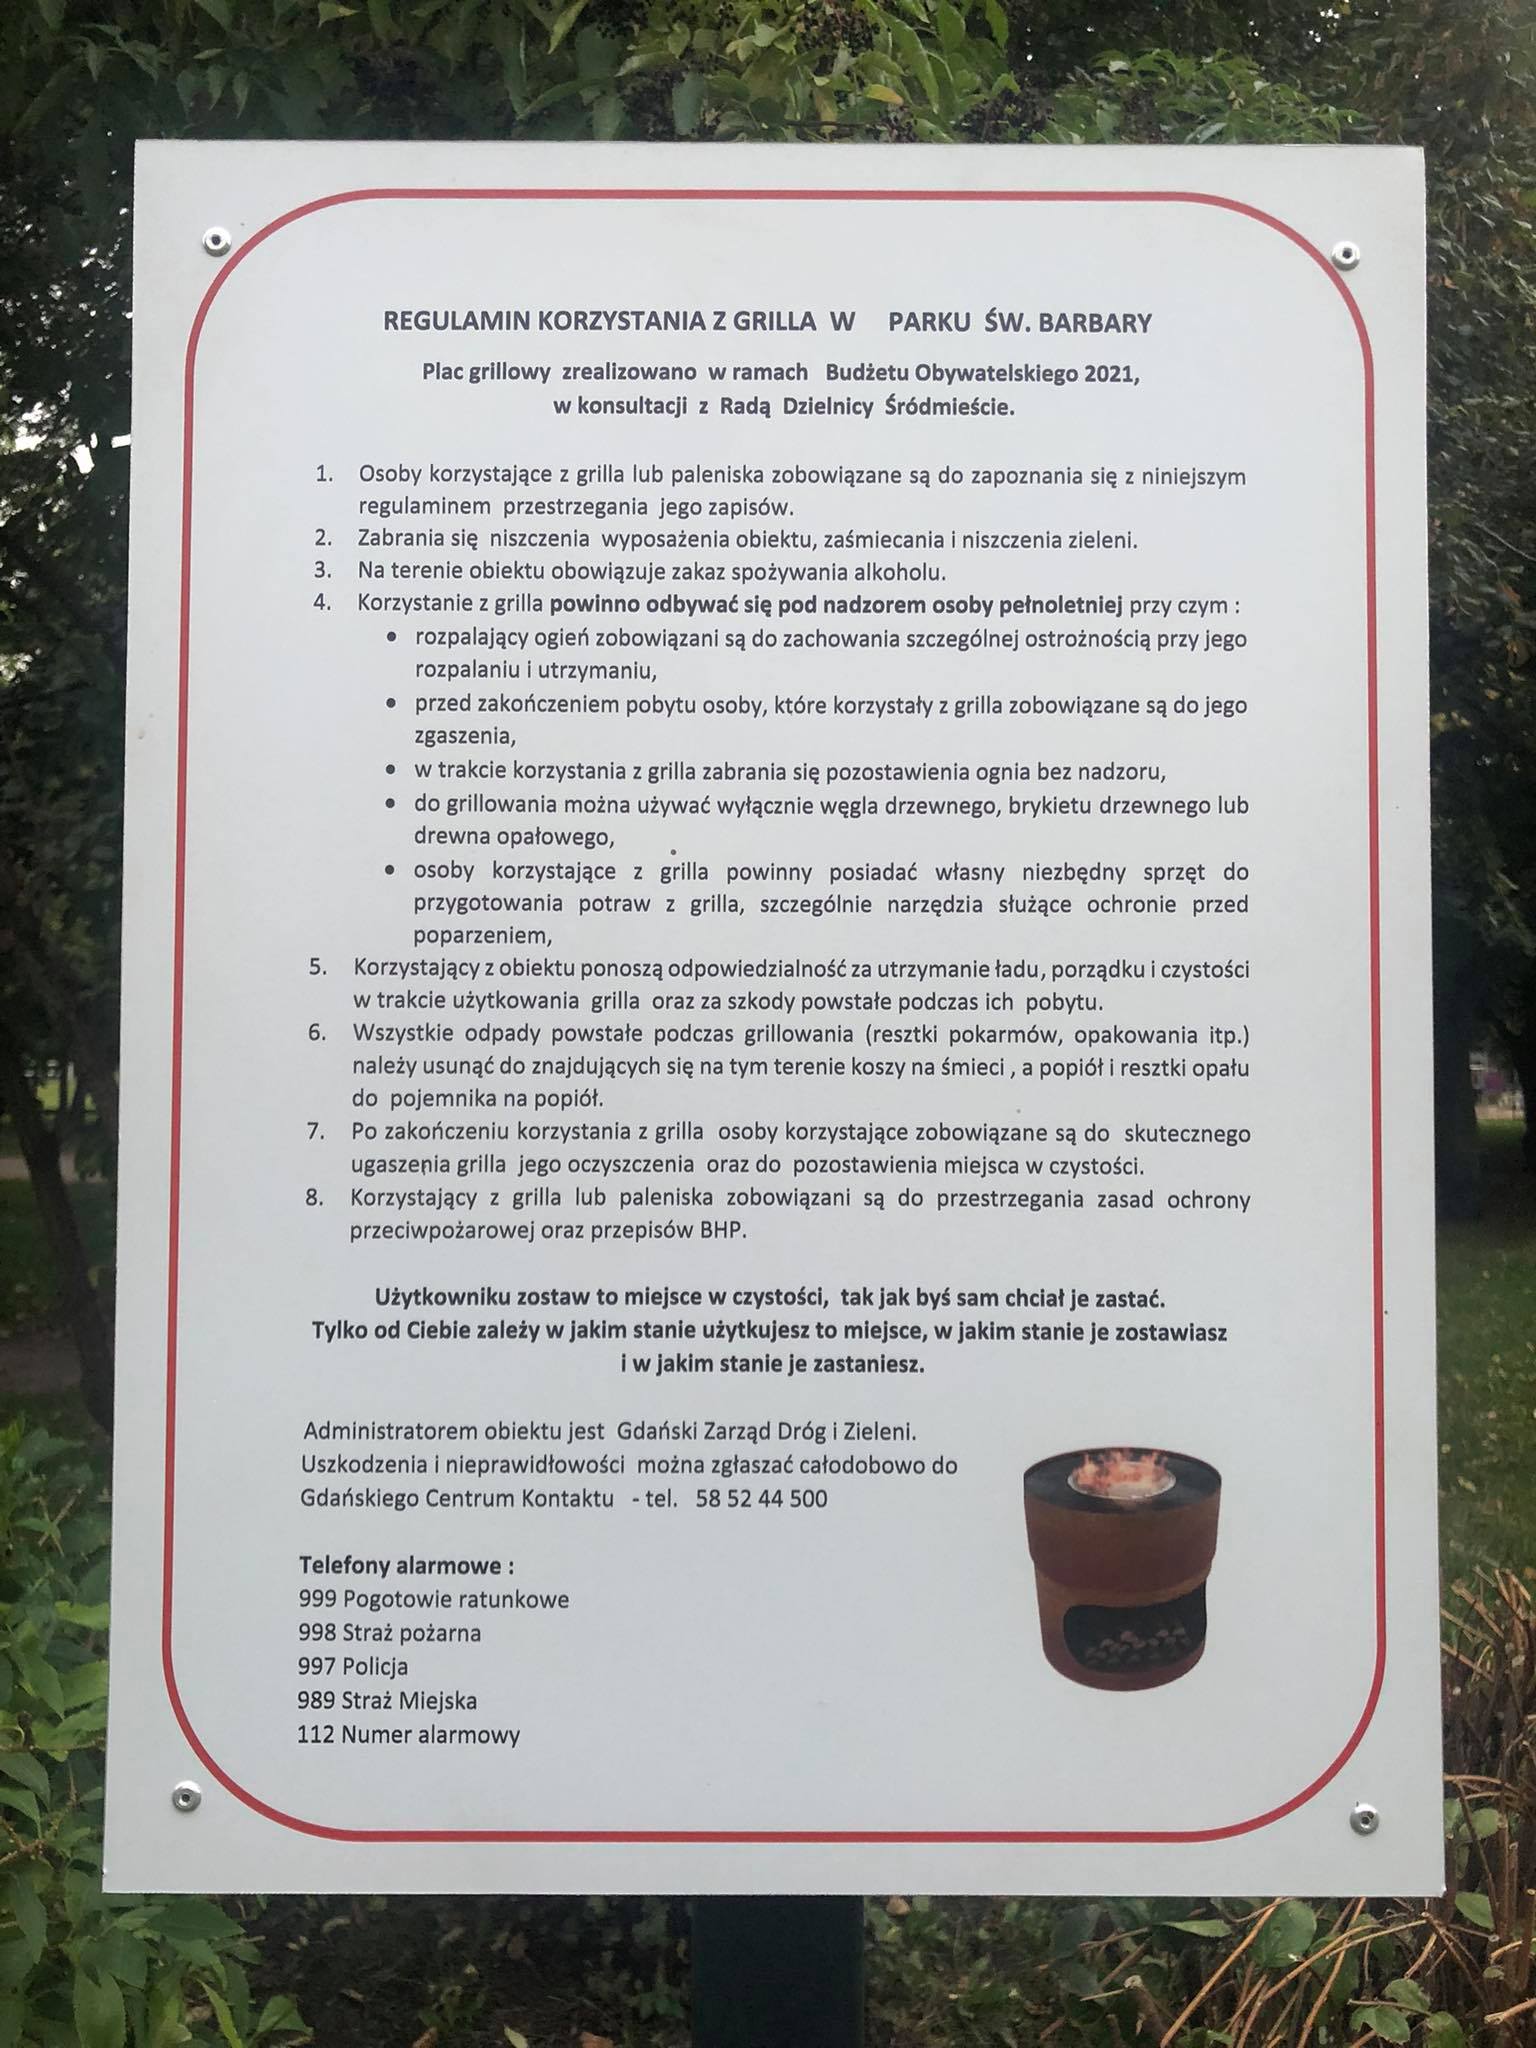 Regulamin placu grillowego w parku św Barbary w Gdańsku